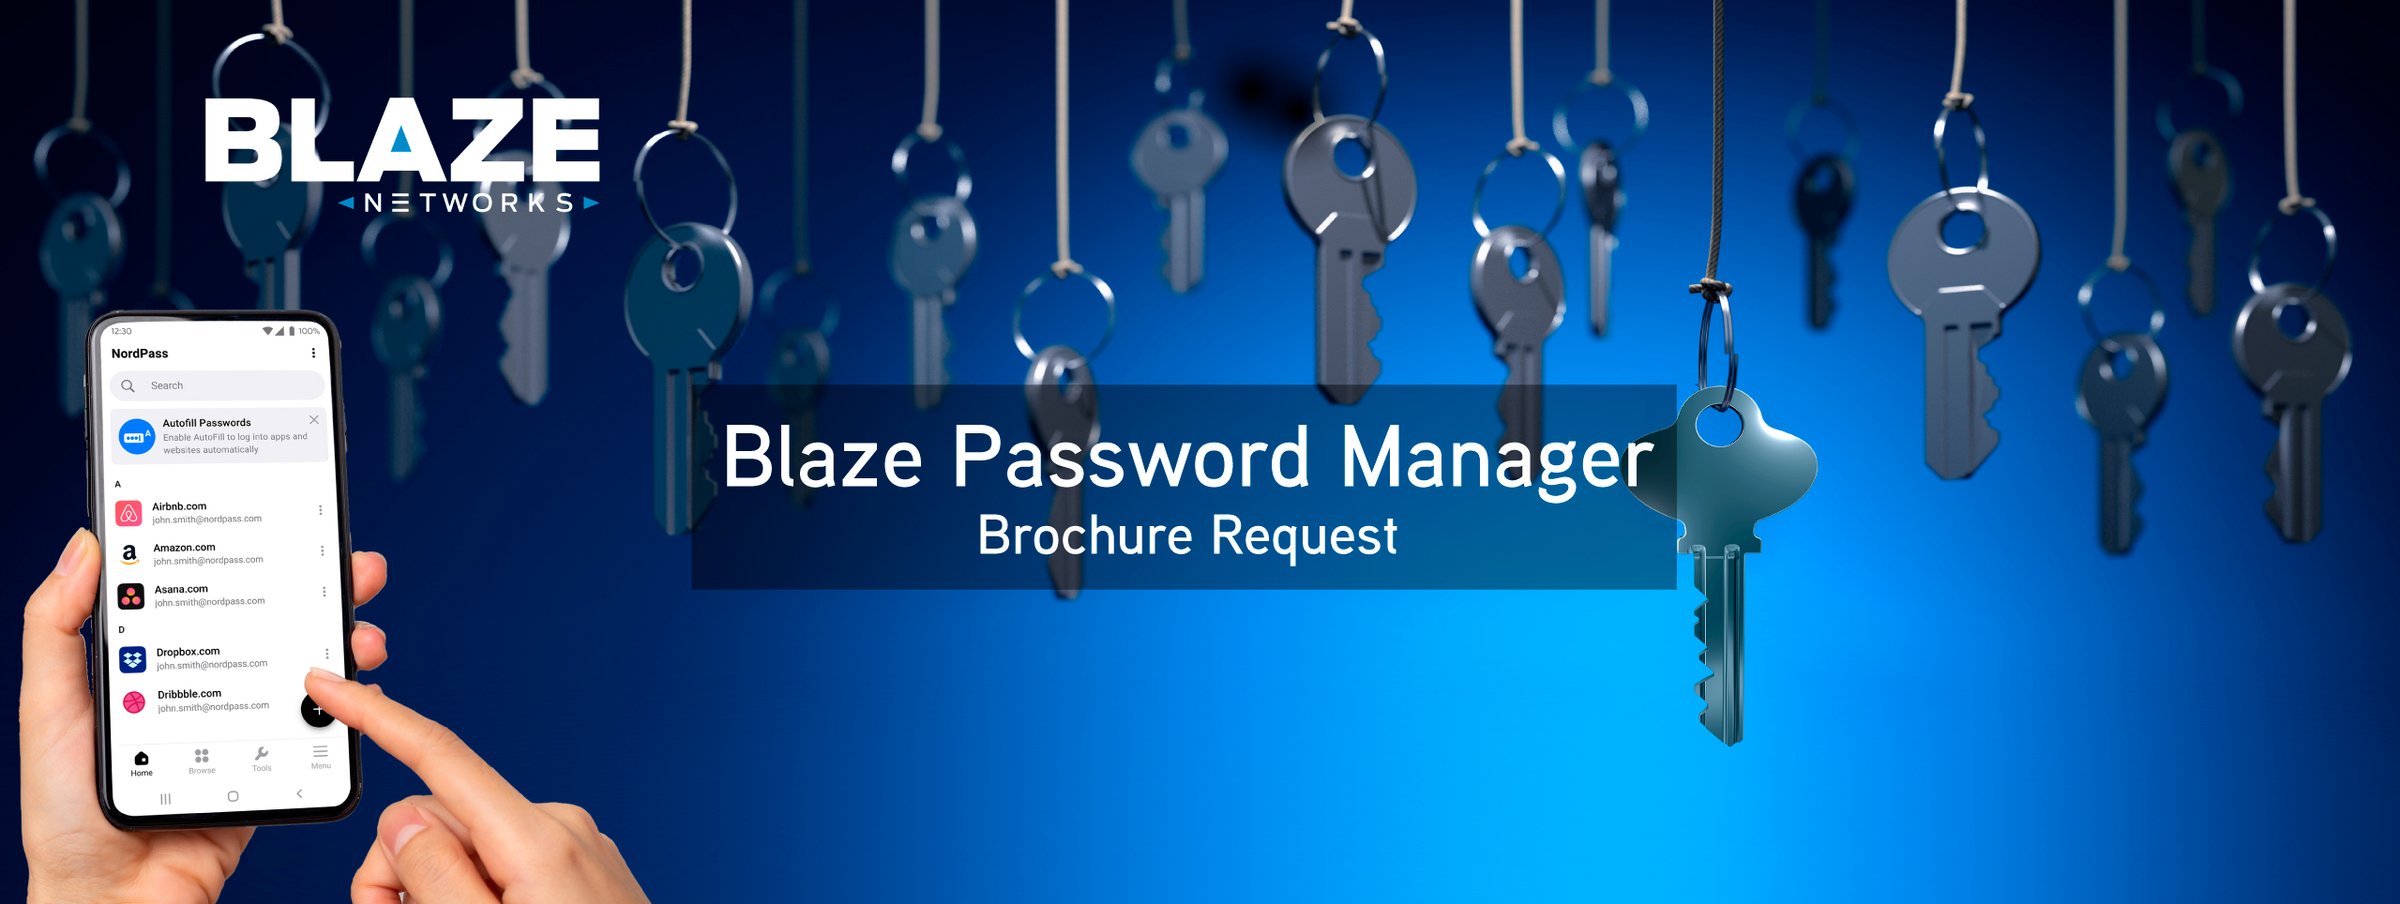 Blaze Password Manager brochure request